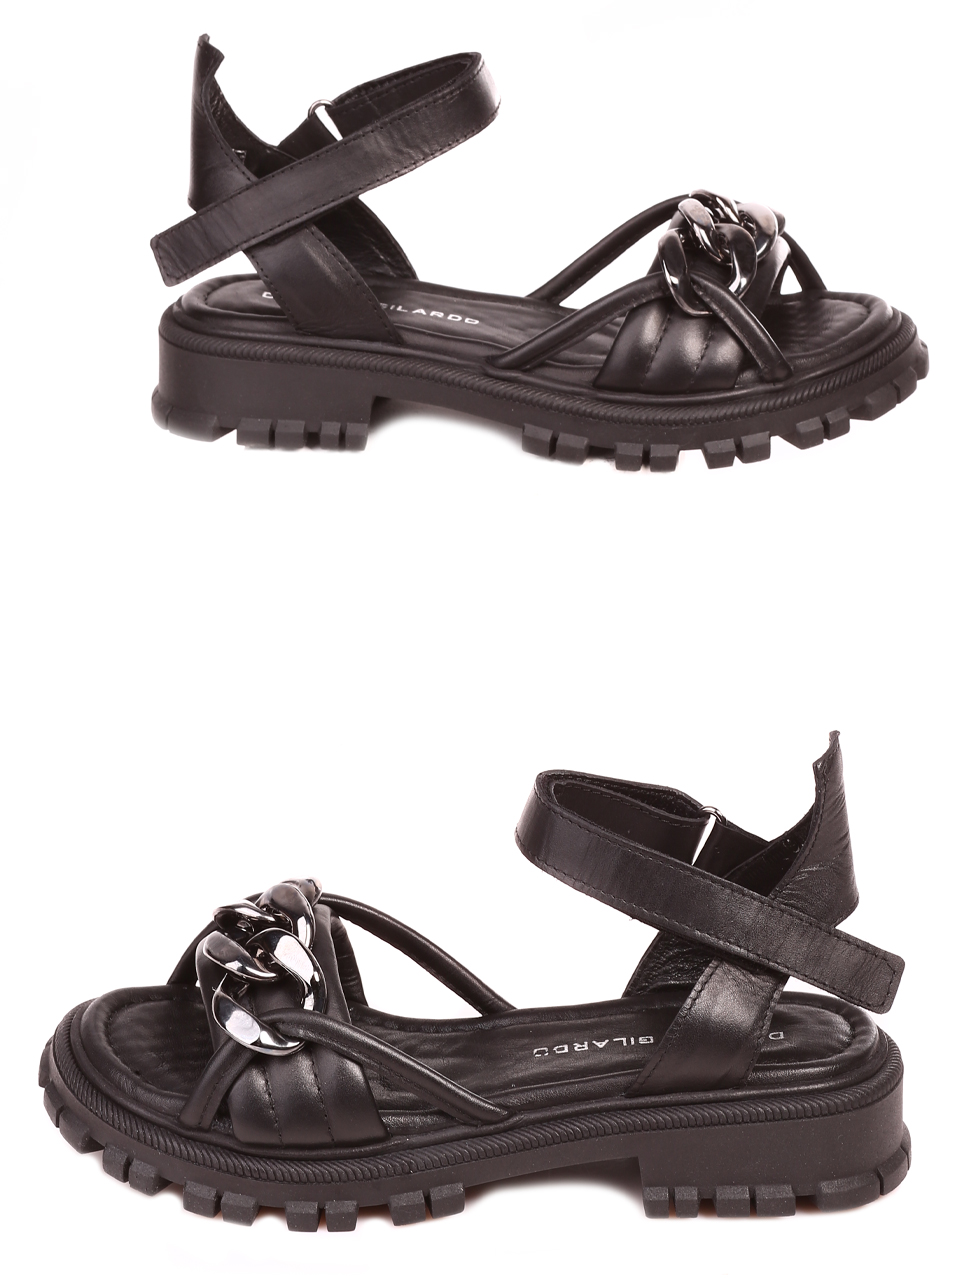 Ежедневни дамски сандали от естествена кожа в черно 4AT-23325 black